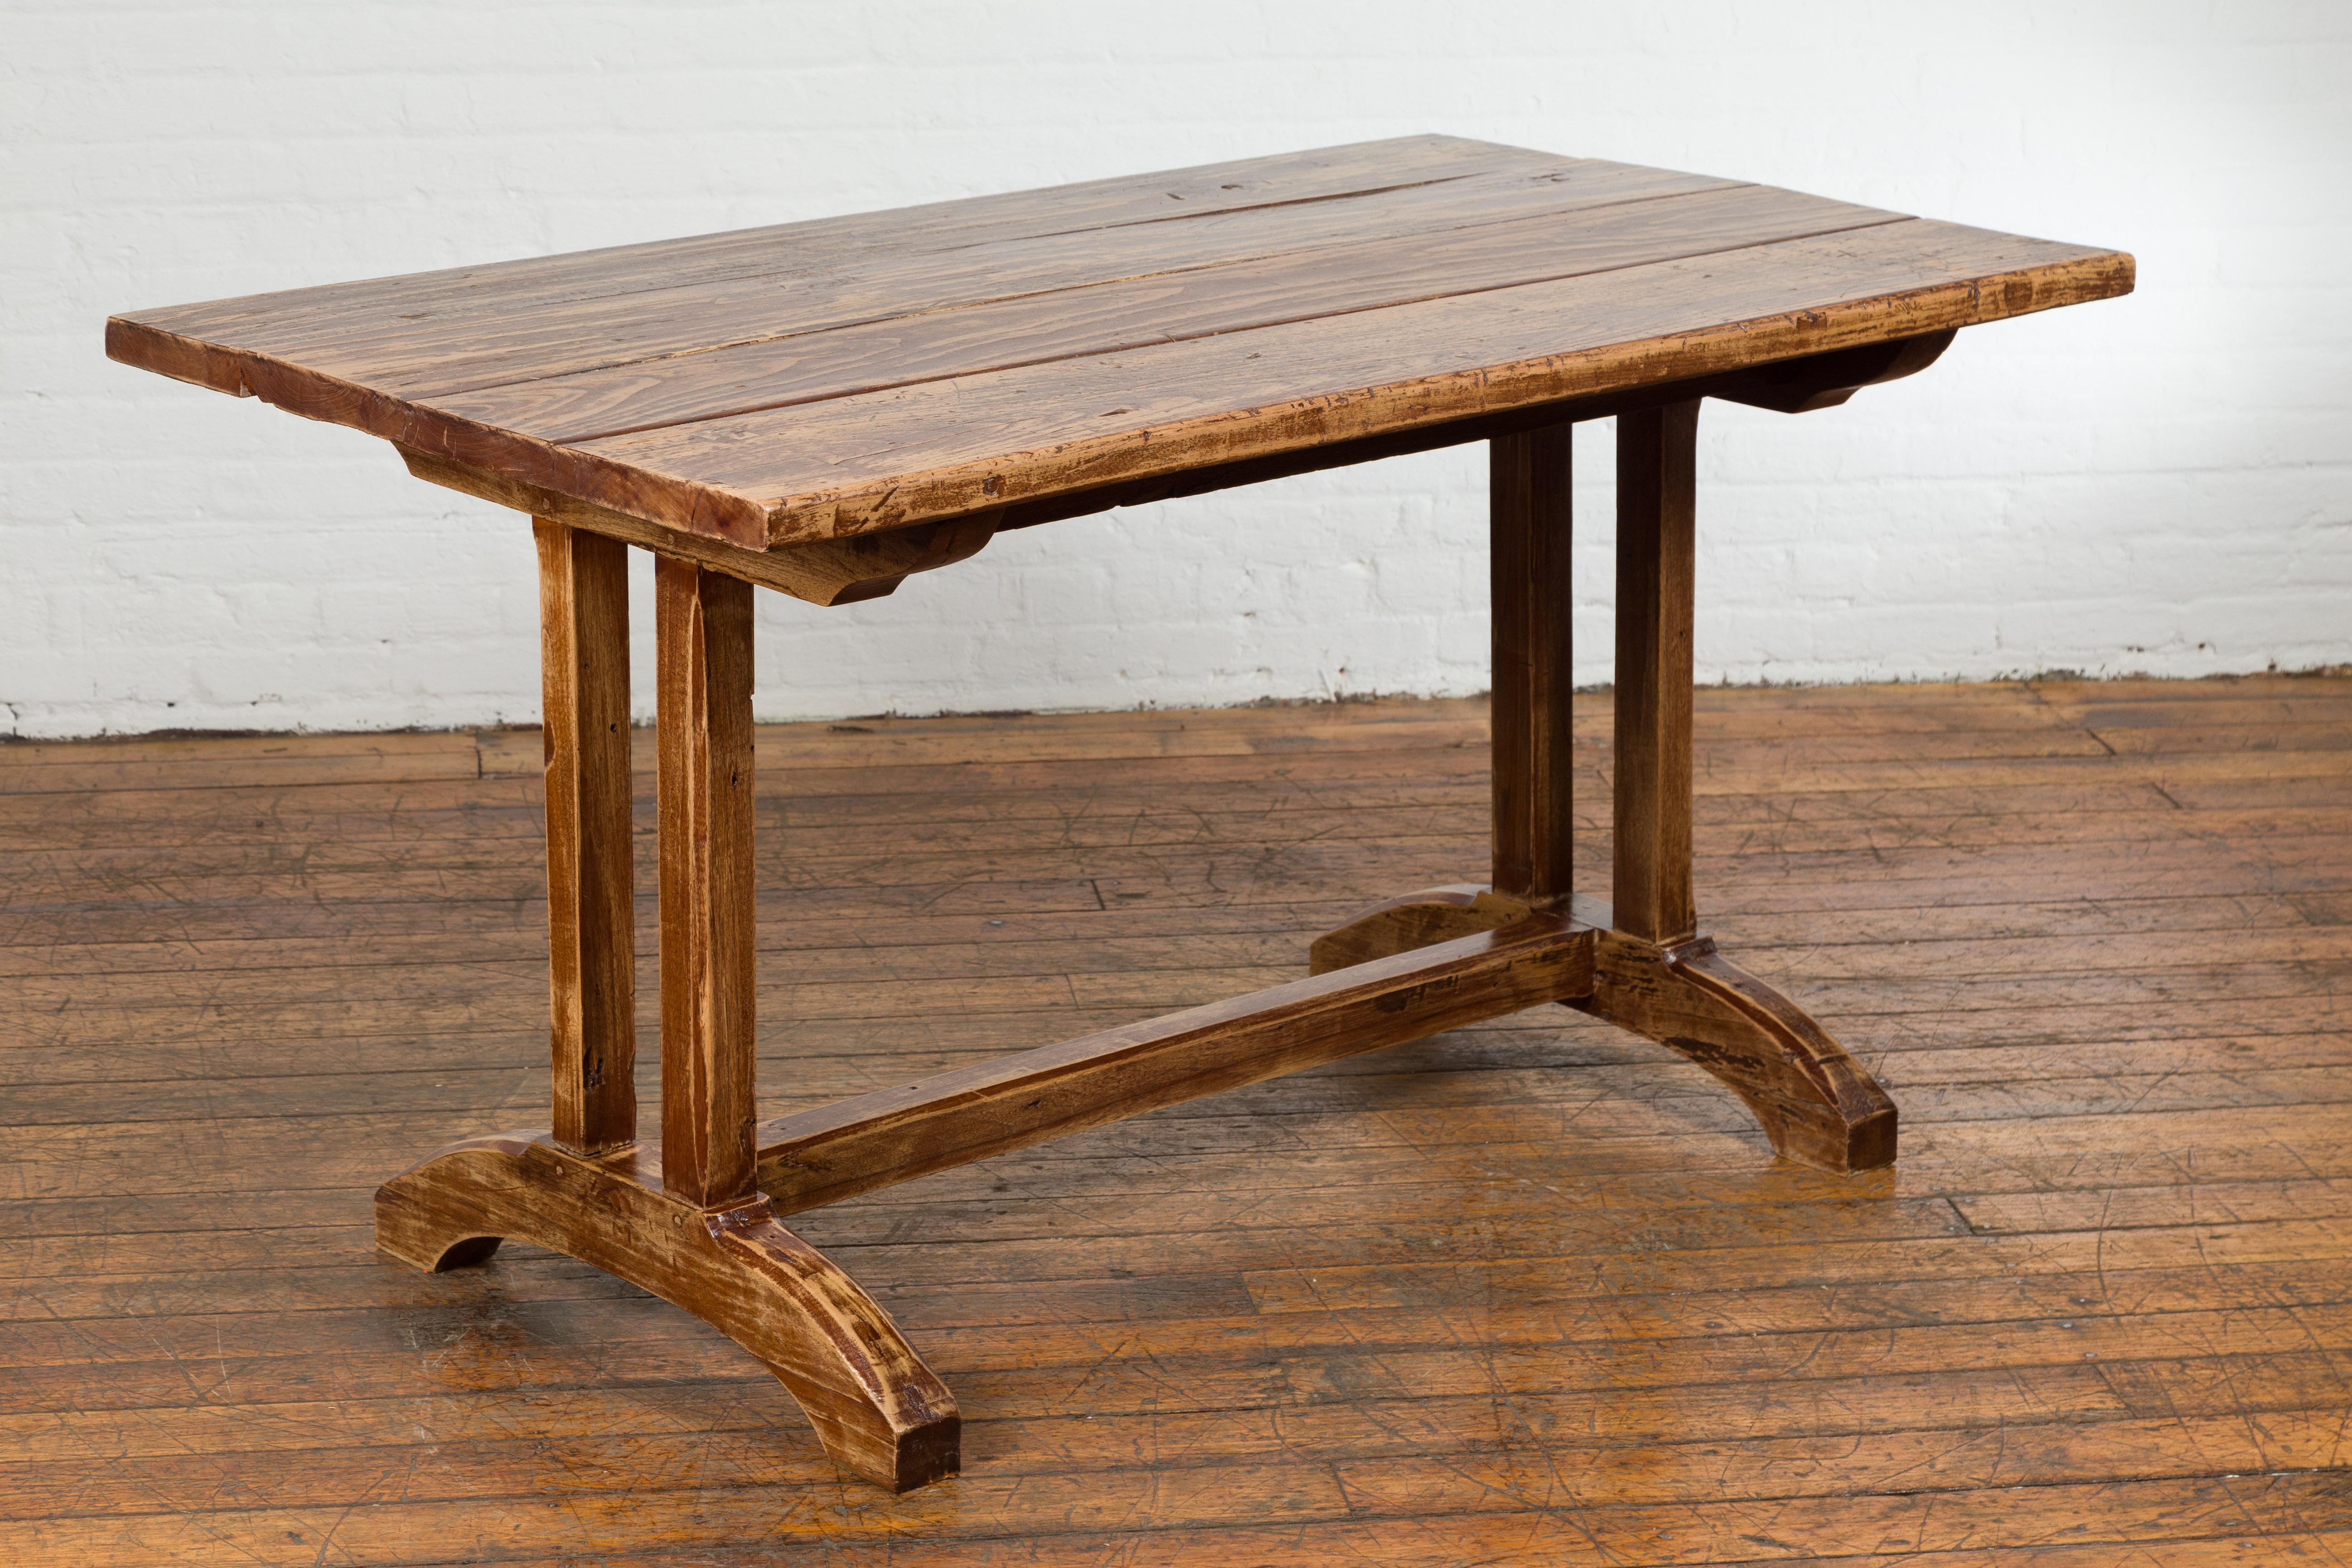 Une table de ferme rustique du 19e siècle avec une base à tréteaux et une finition vieillie sur mesure. Émanant du charme intemporel du 19e siècle, cette table de ferme rustique est une ode à l'authenticité et à l'artisanat. Dotée d'une robuste base